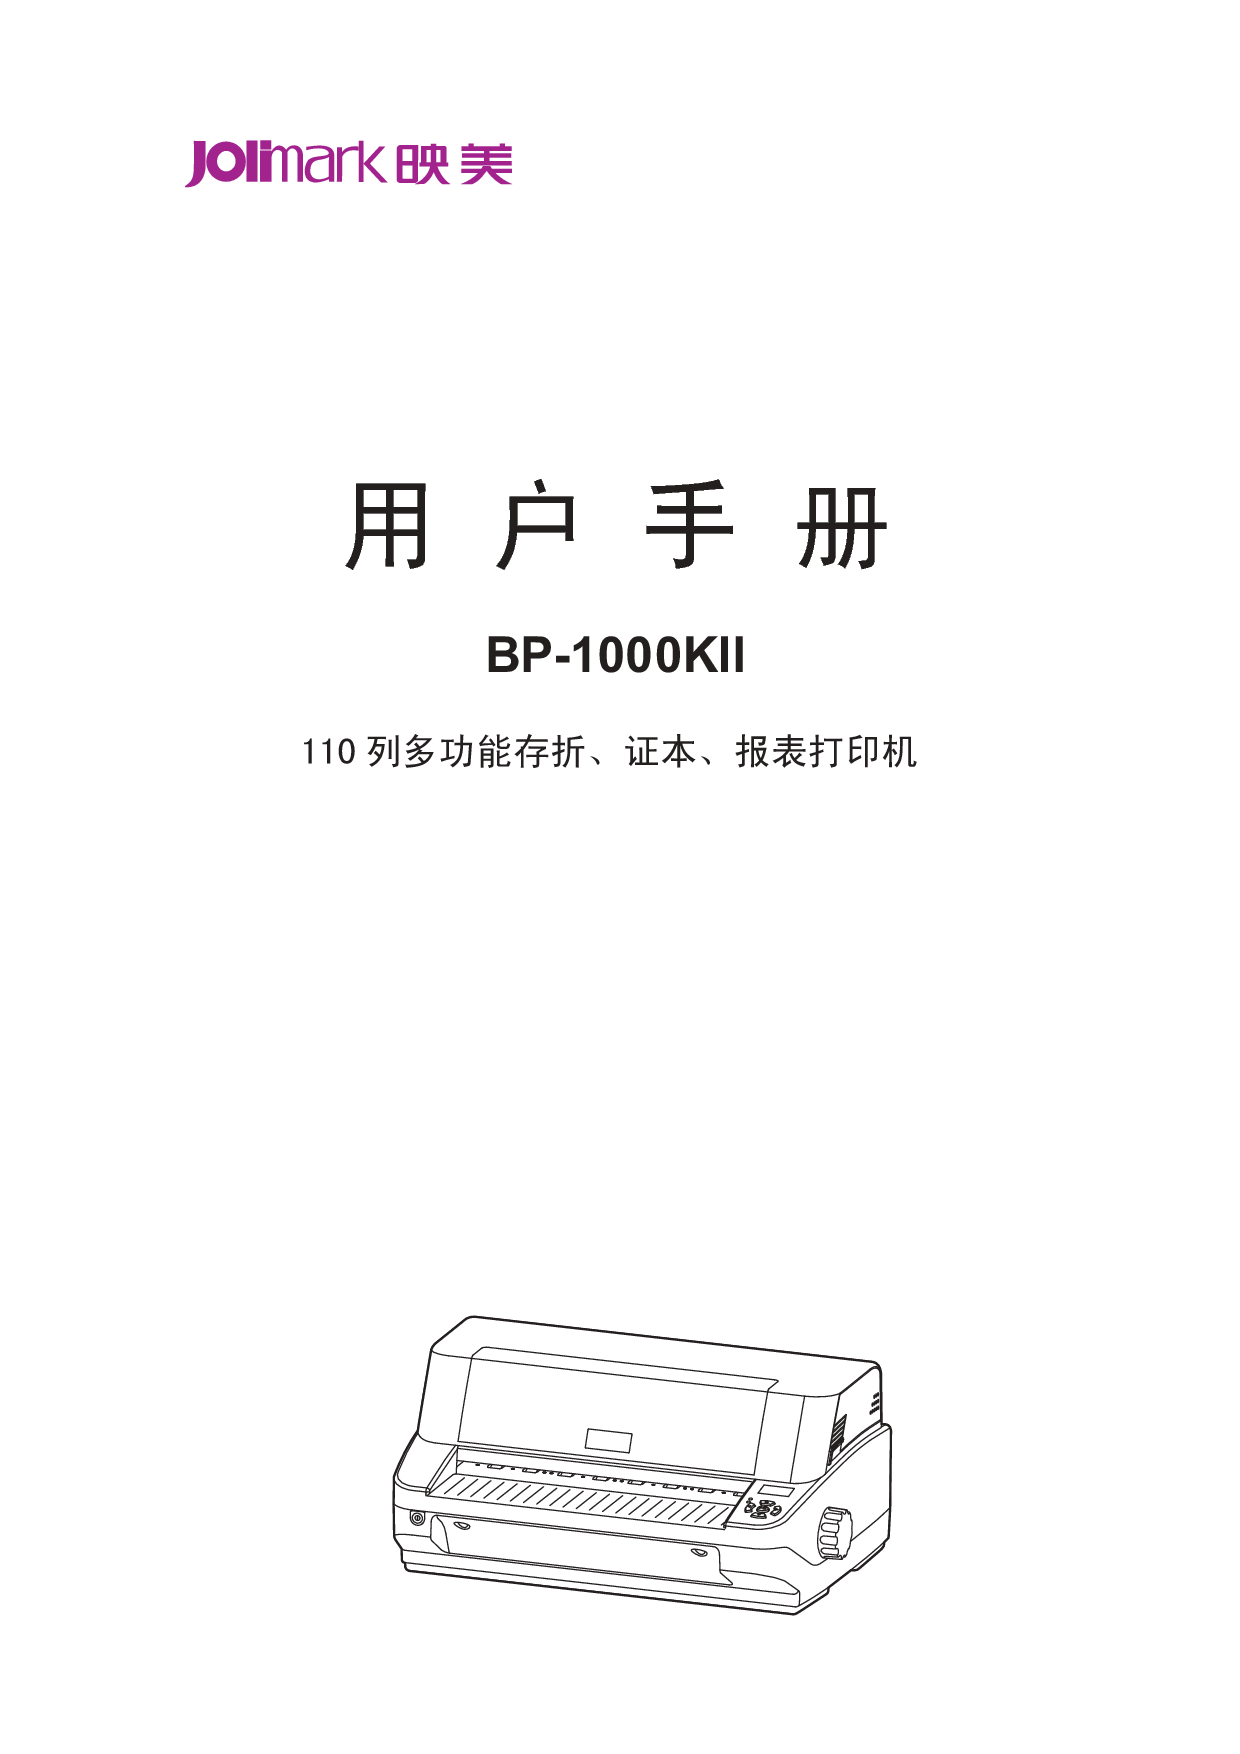 映美 Jolimark BP-1000KII 用户手册 封面